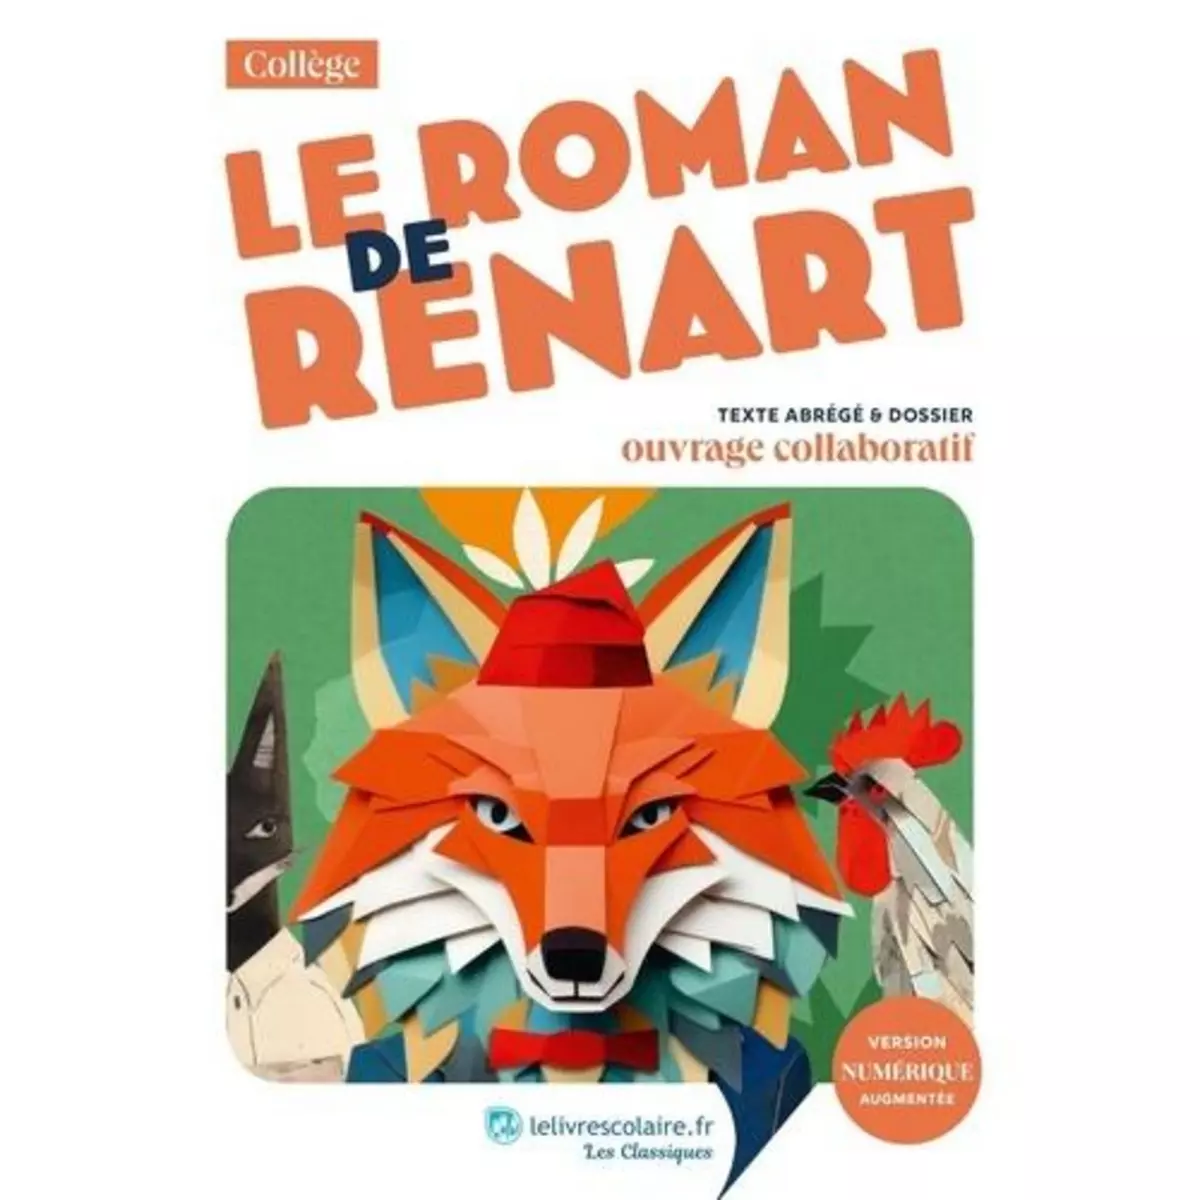  LE ROMAN DE RENART. TEXTE ABREGE ET DOSSIER PEDAGOGIQUE COLLABORATIF, Lelivrescolaire.fr